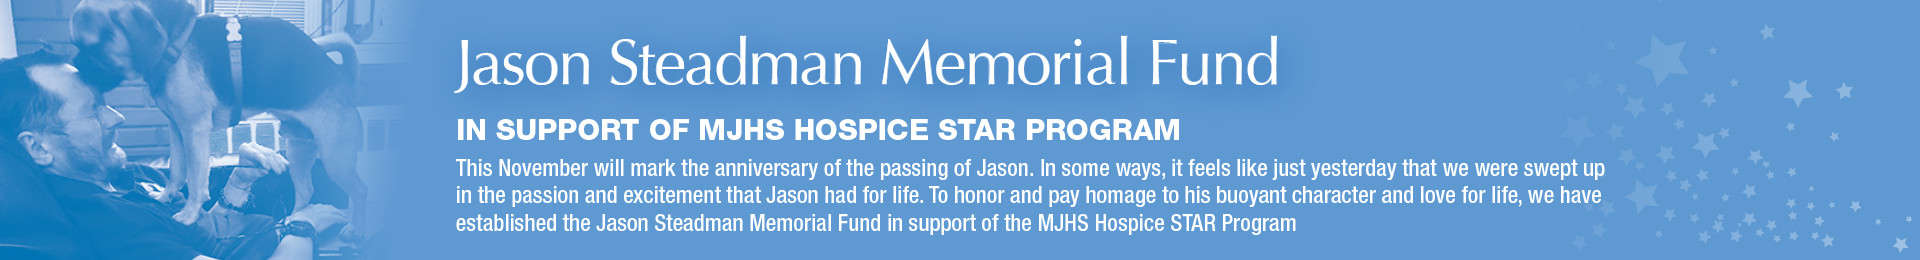 Jason Steadman Memorial Fund